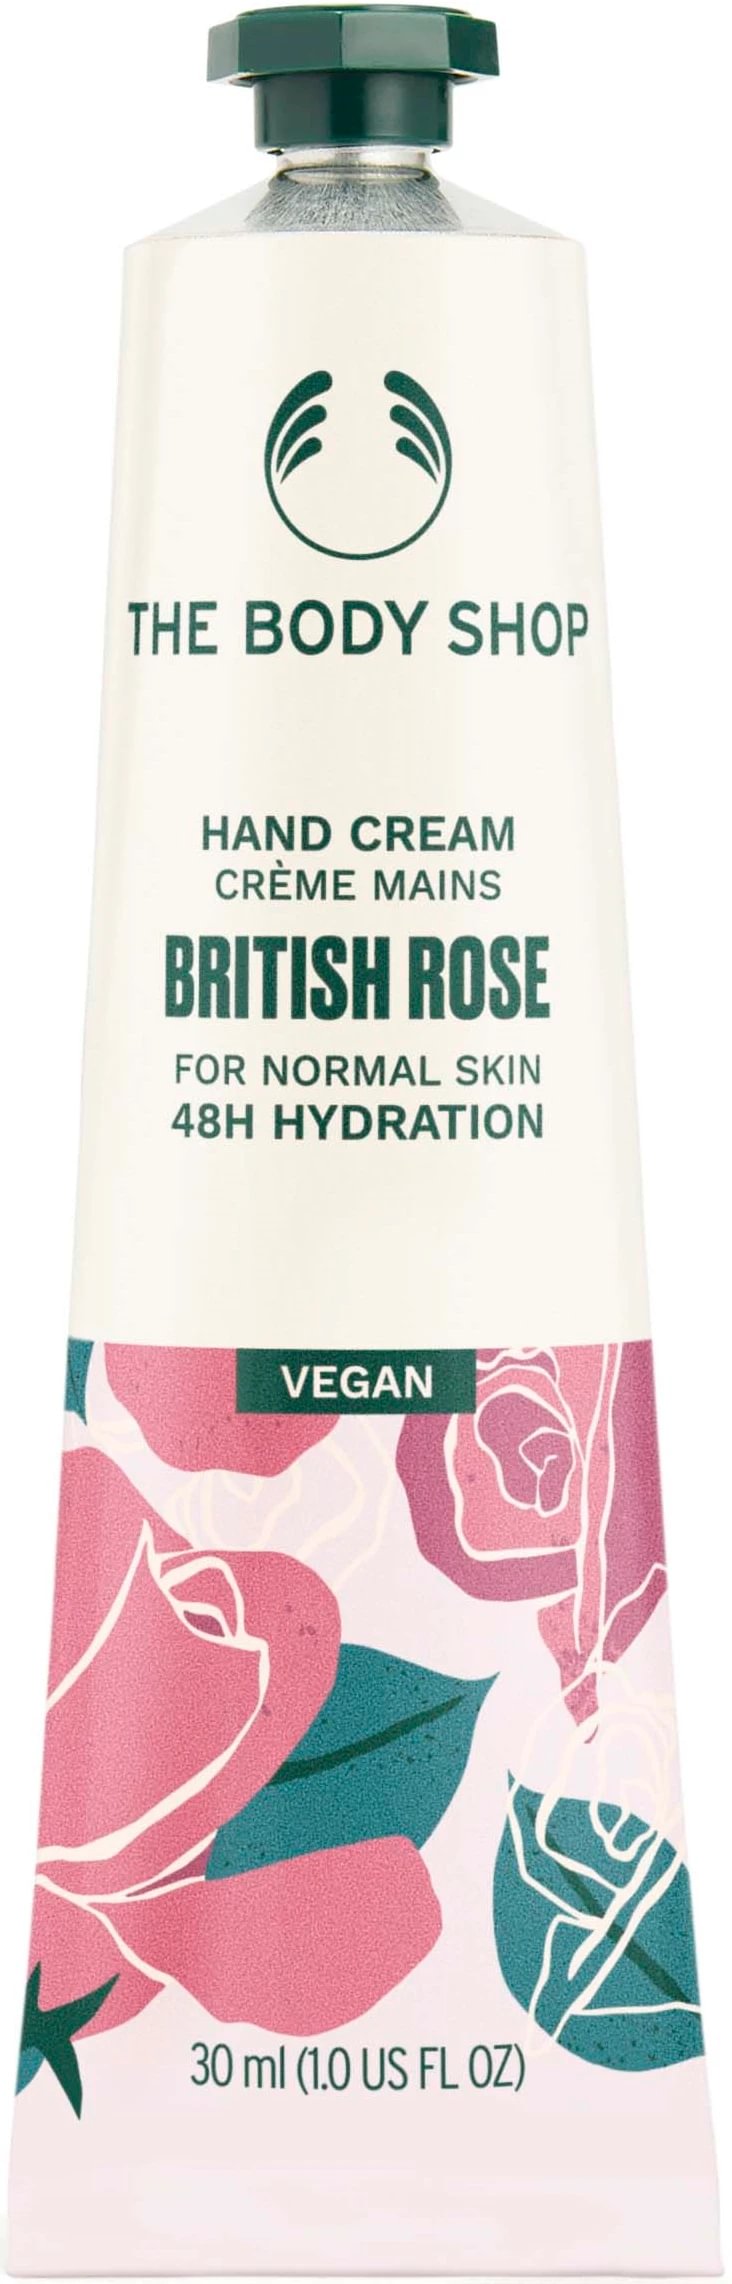 The Body Shop British Rose hand cream 30ml